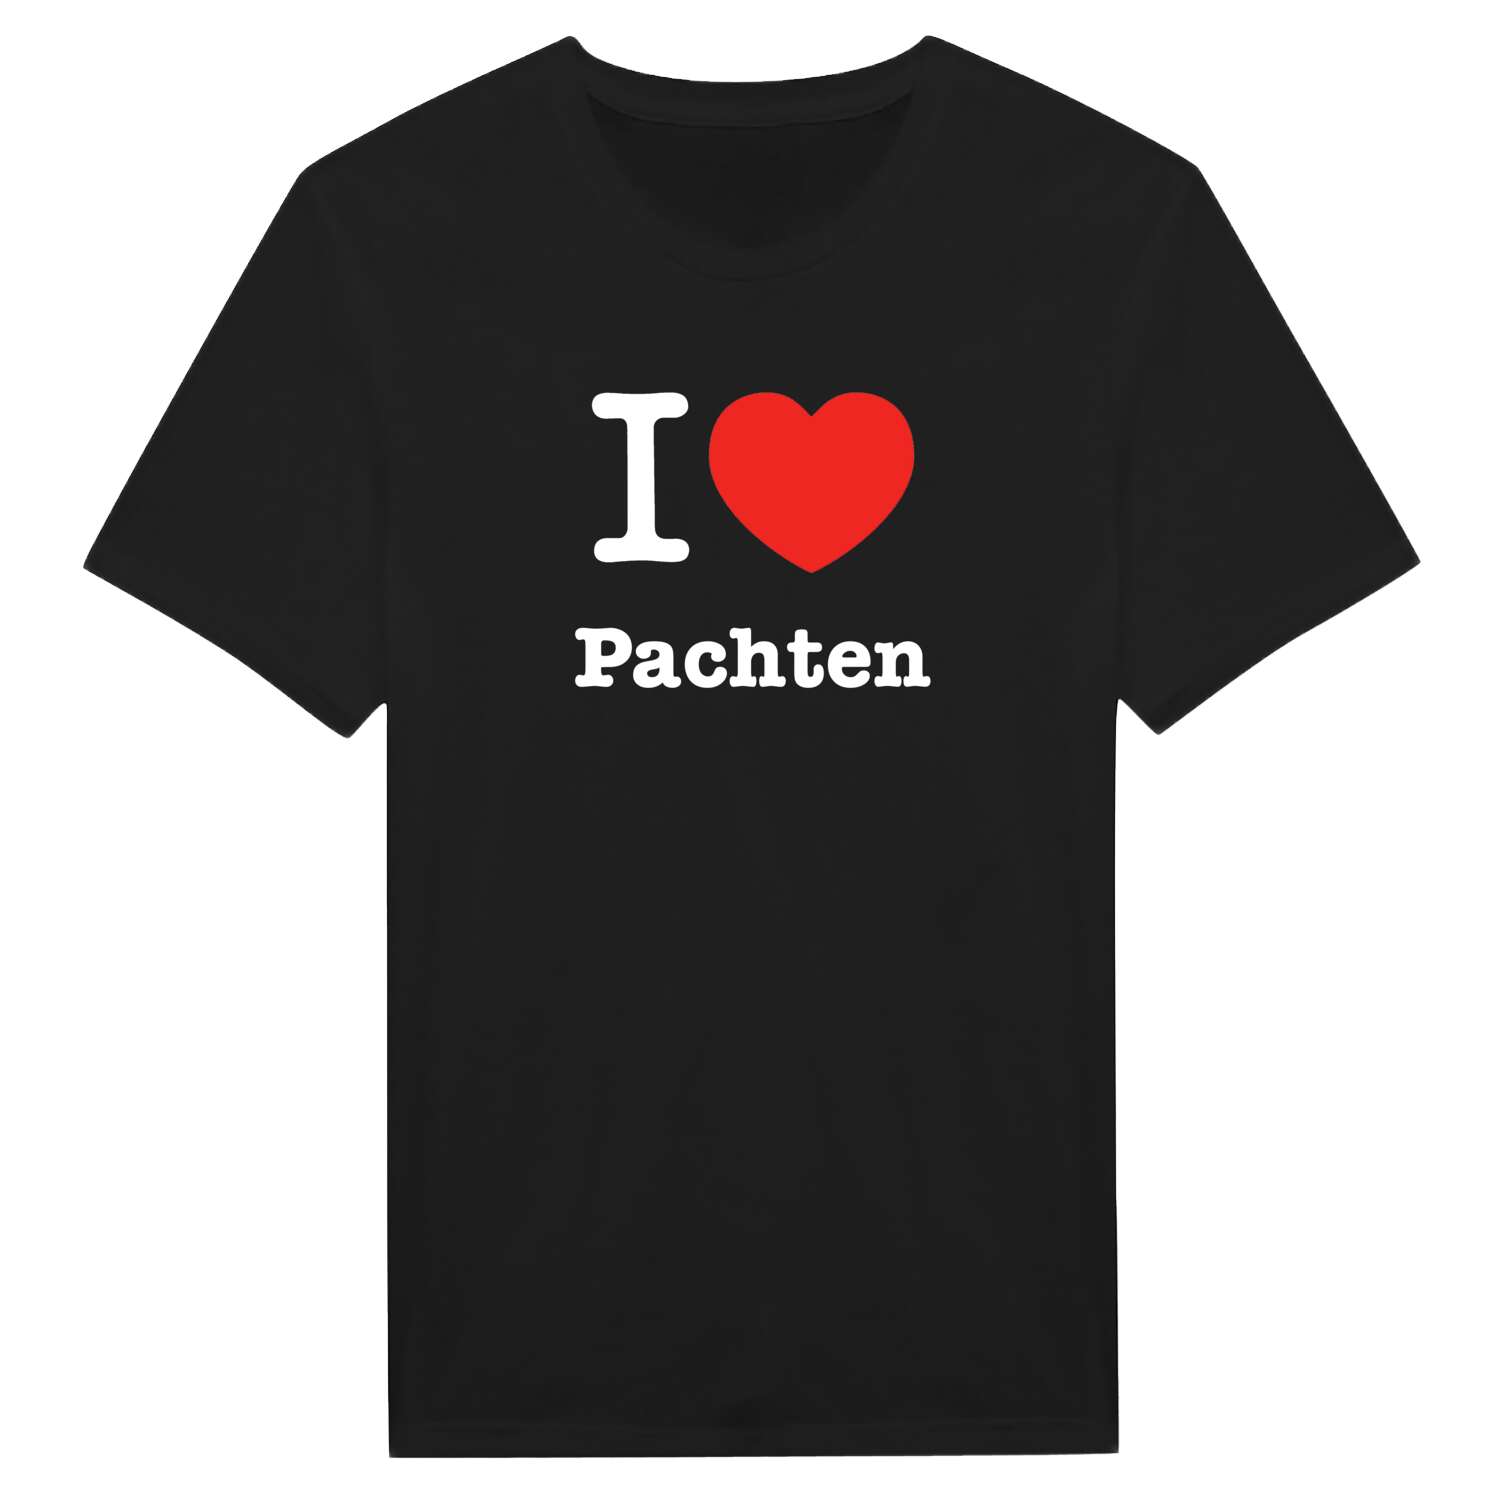 Pachten T-Shirt »I love«